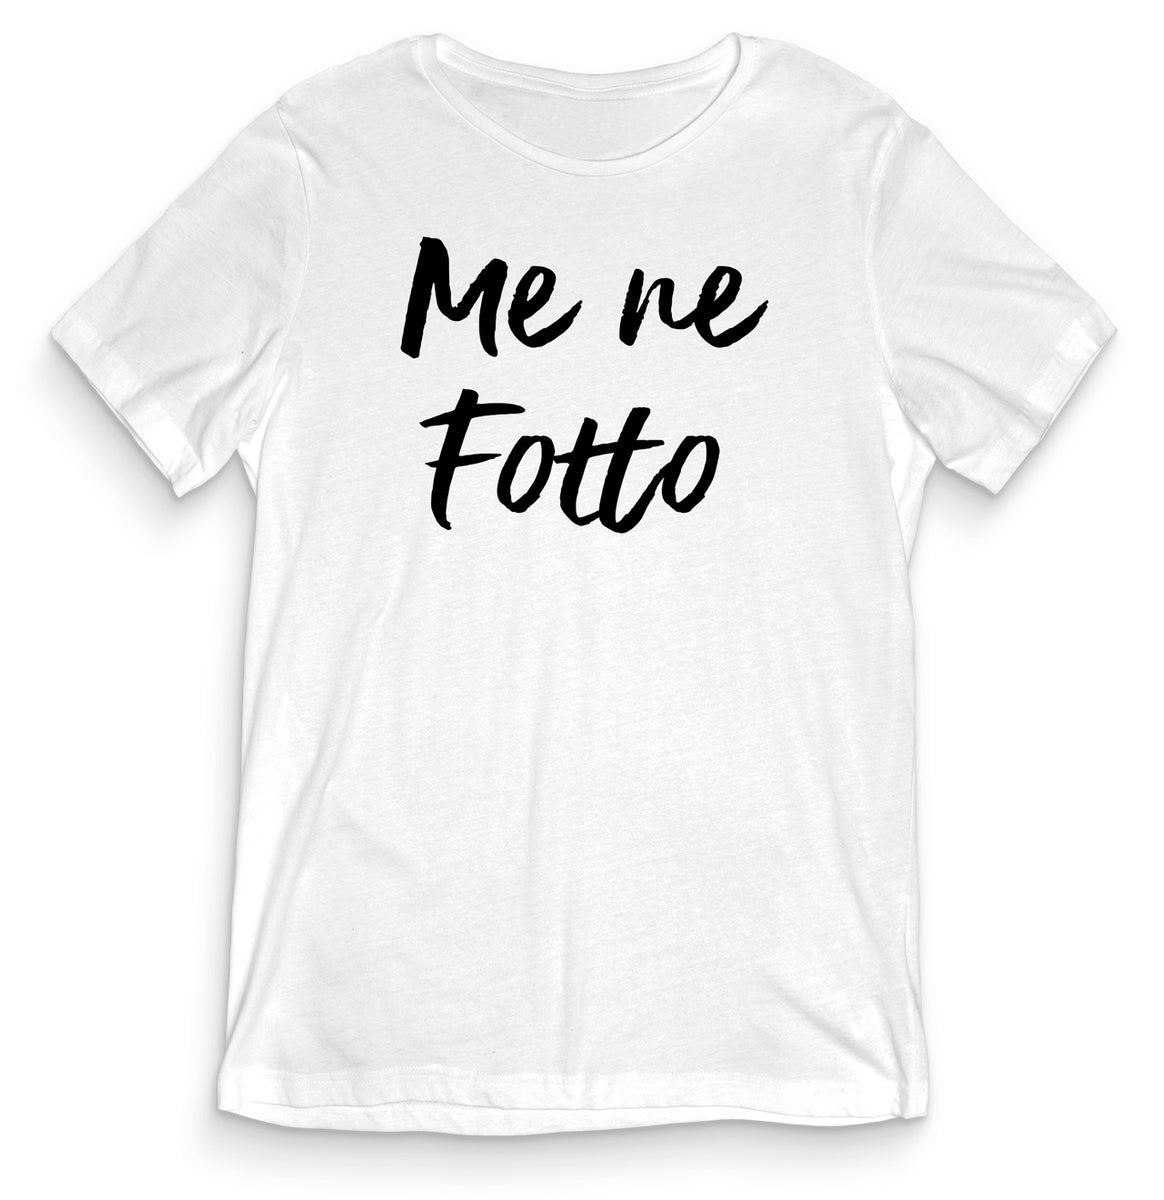 Mett Fußmatte - Fett dank Mett  Fußmatte Fullprint - Shirtee.de / Online  Custom T Shirts Design Maker & T Shirt Druck - Shirtee